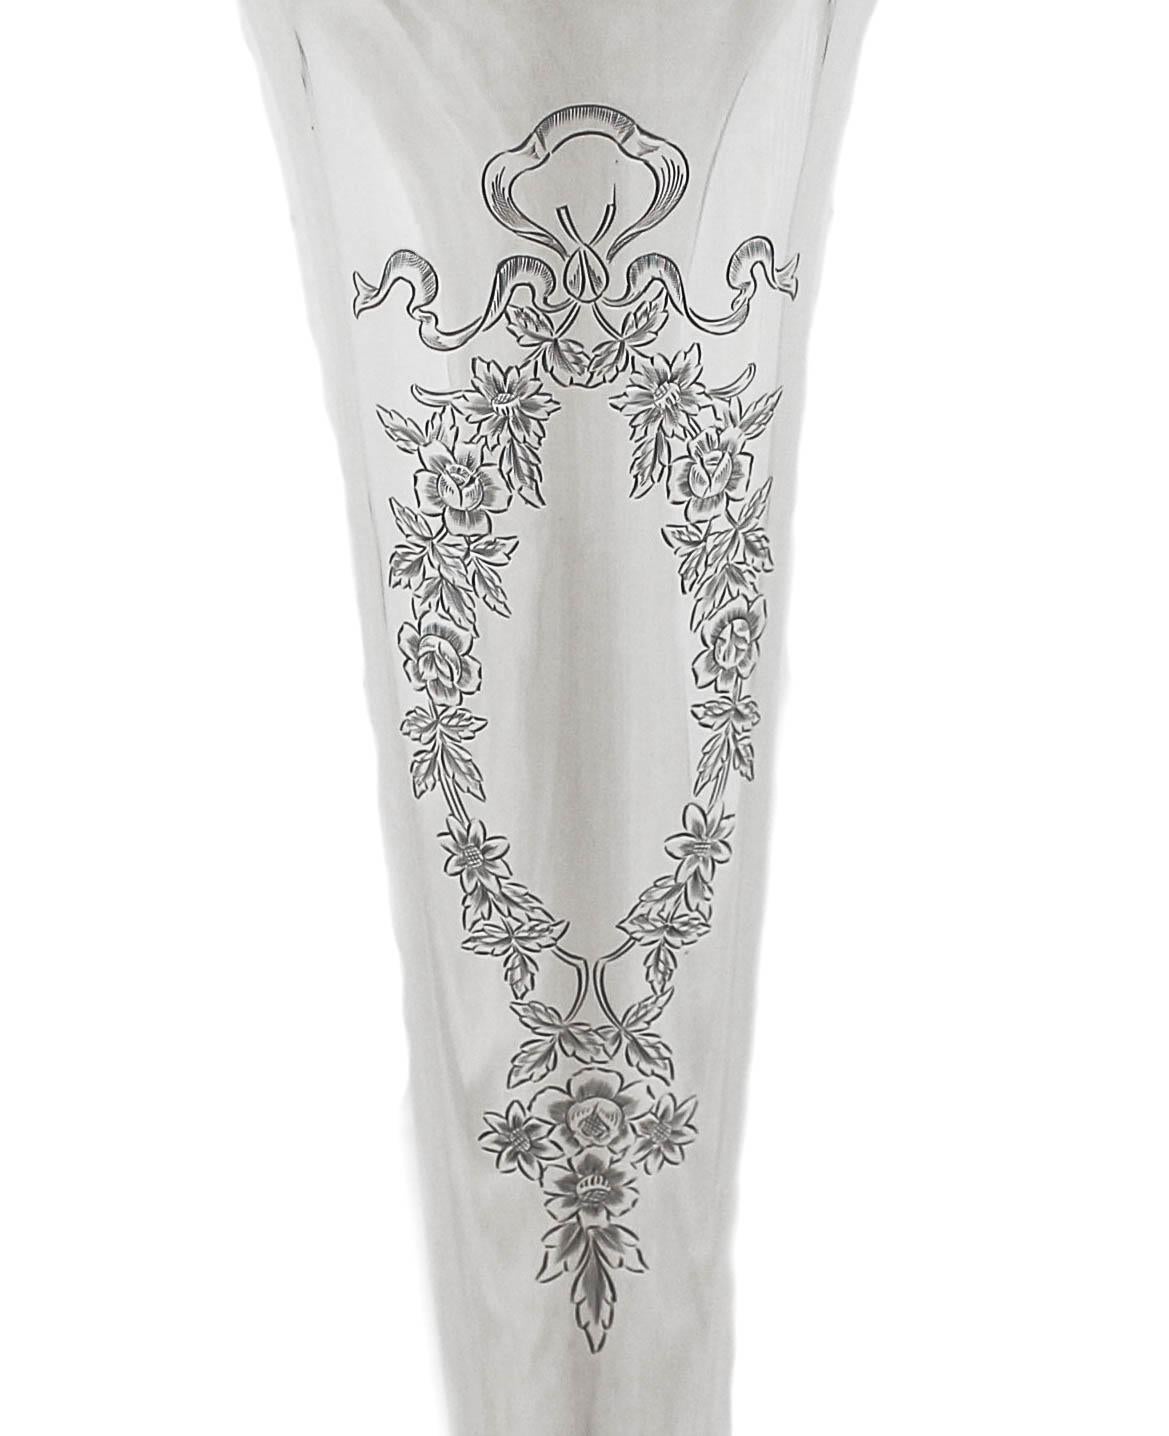 Nous avons le plaisir de vous offrir ce vase en argent sterling.  Il est haut et mince, avec une forme effilée. Un magnifique cartouche floral attend votre monogramme personnalisé.  En dehors de cela, il n'y a pas de gravures décoratives.  Ce vase